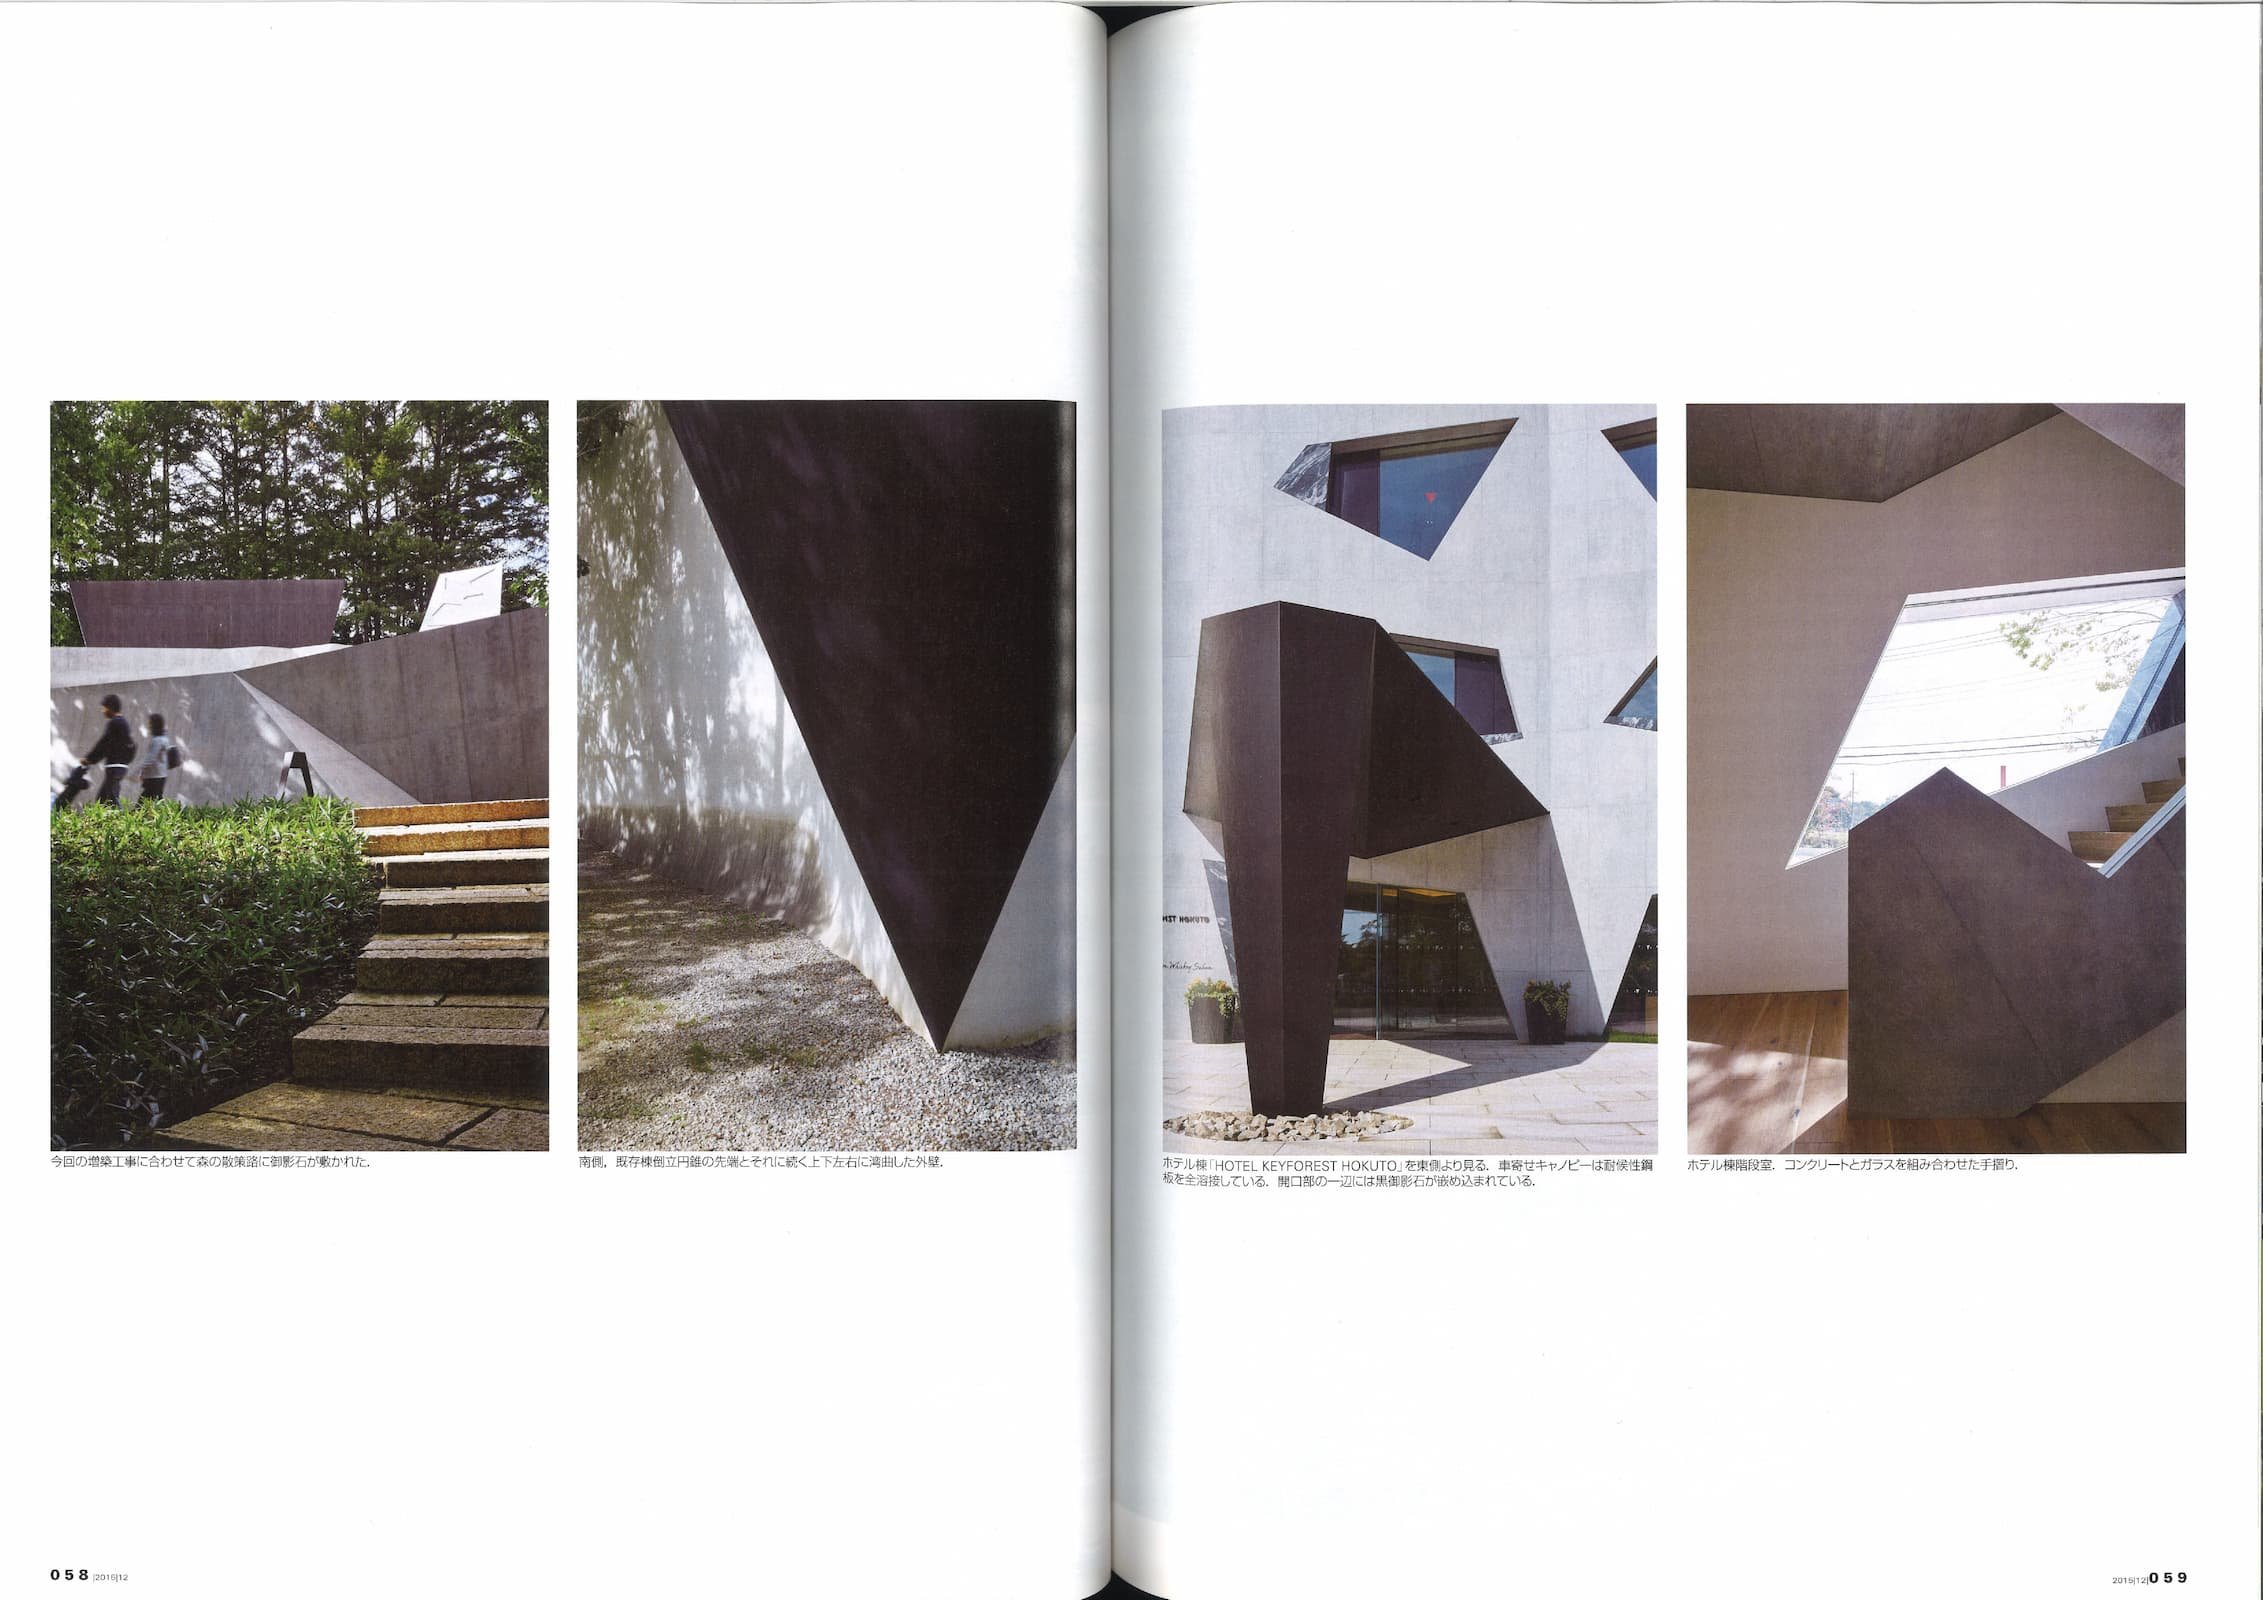 新建築 - New Architecture 90 - Nakamura Keith Haring Collection_Page_5.jpg